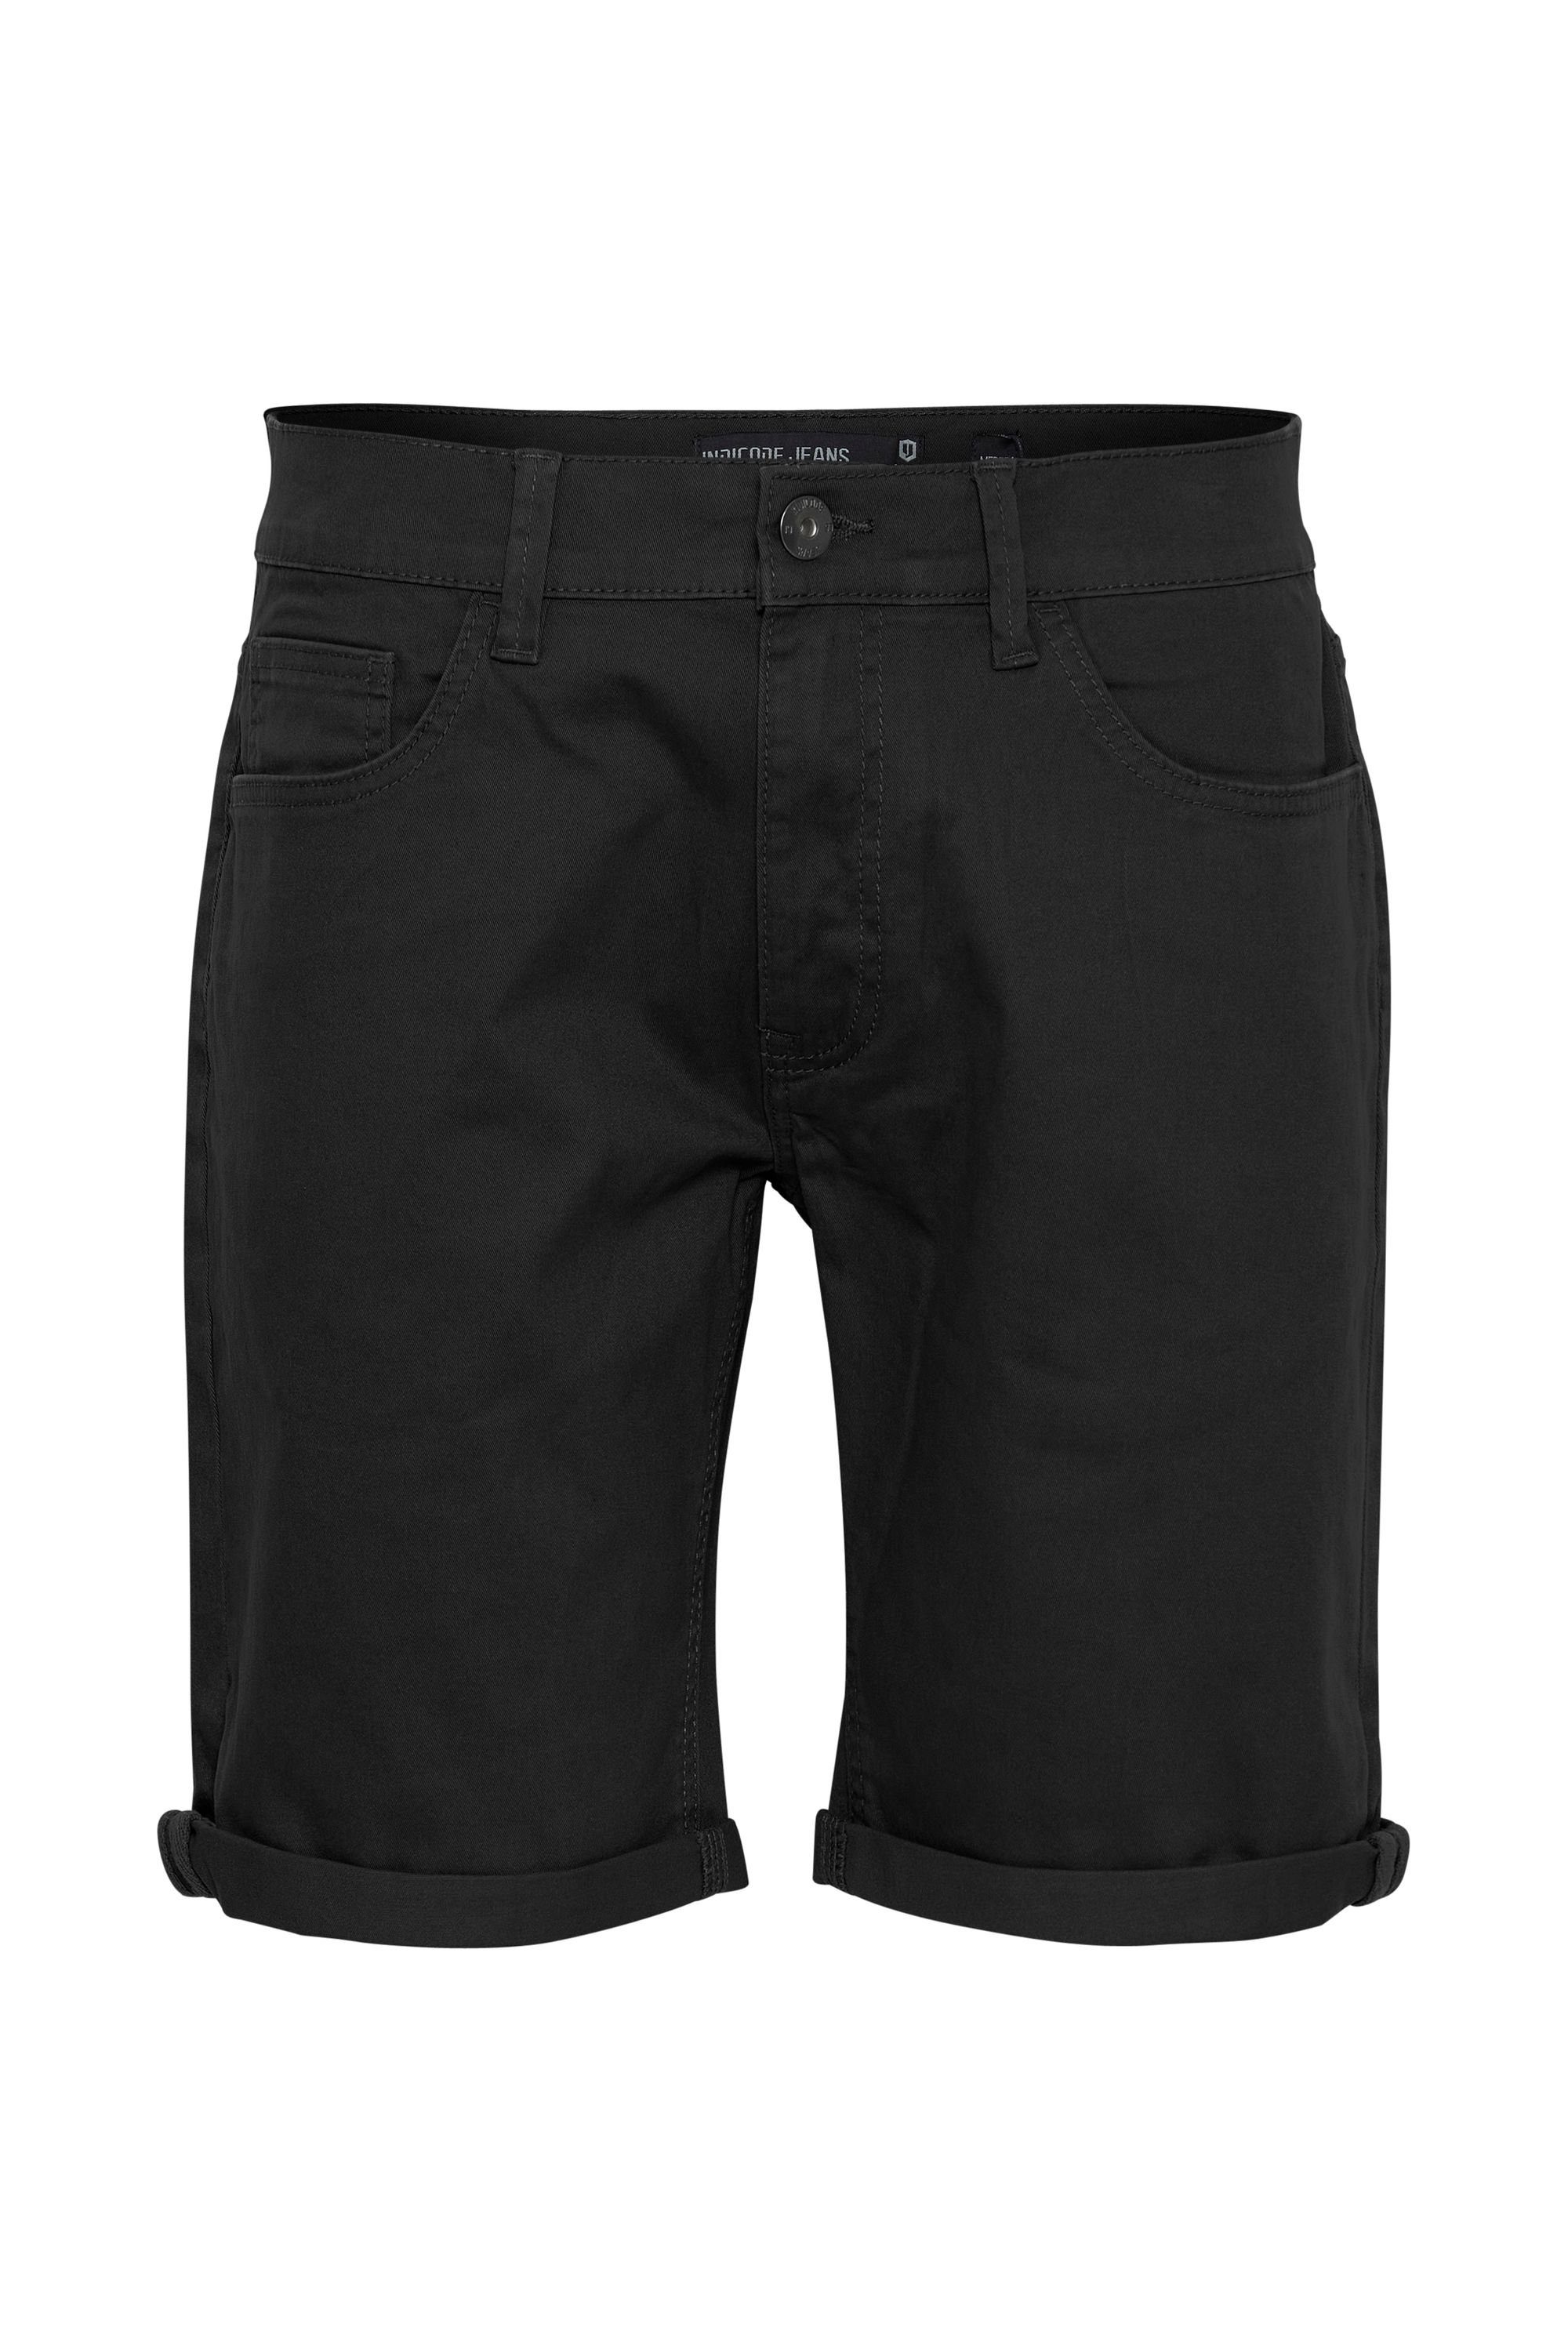 Indicode Shorts IDPokka Black (999)